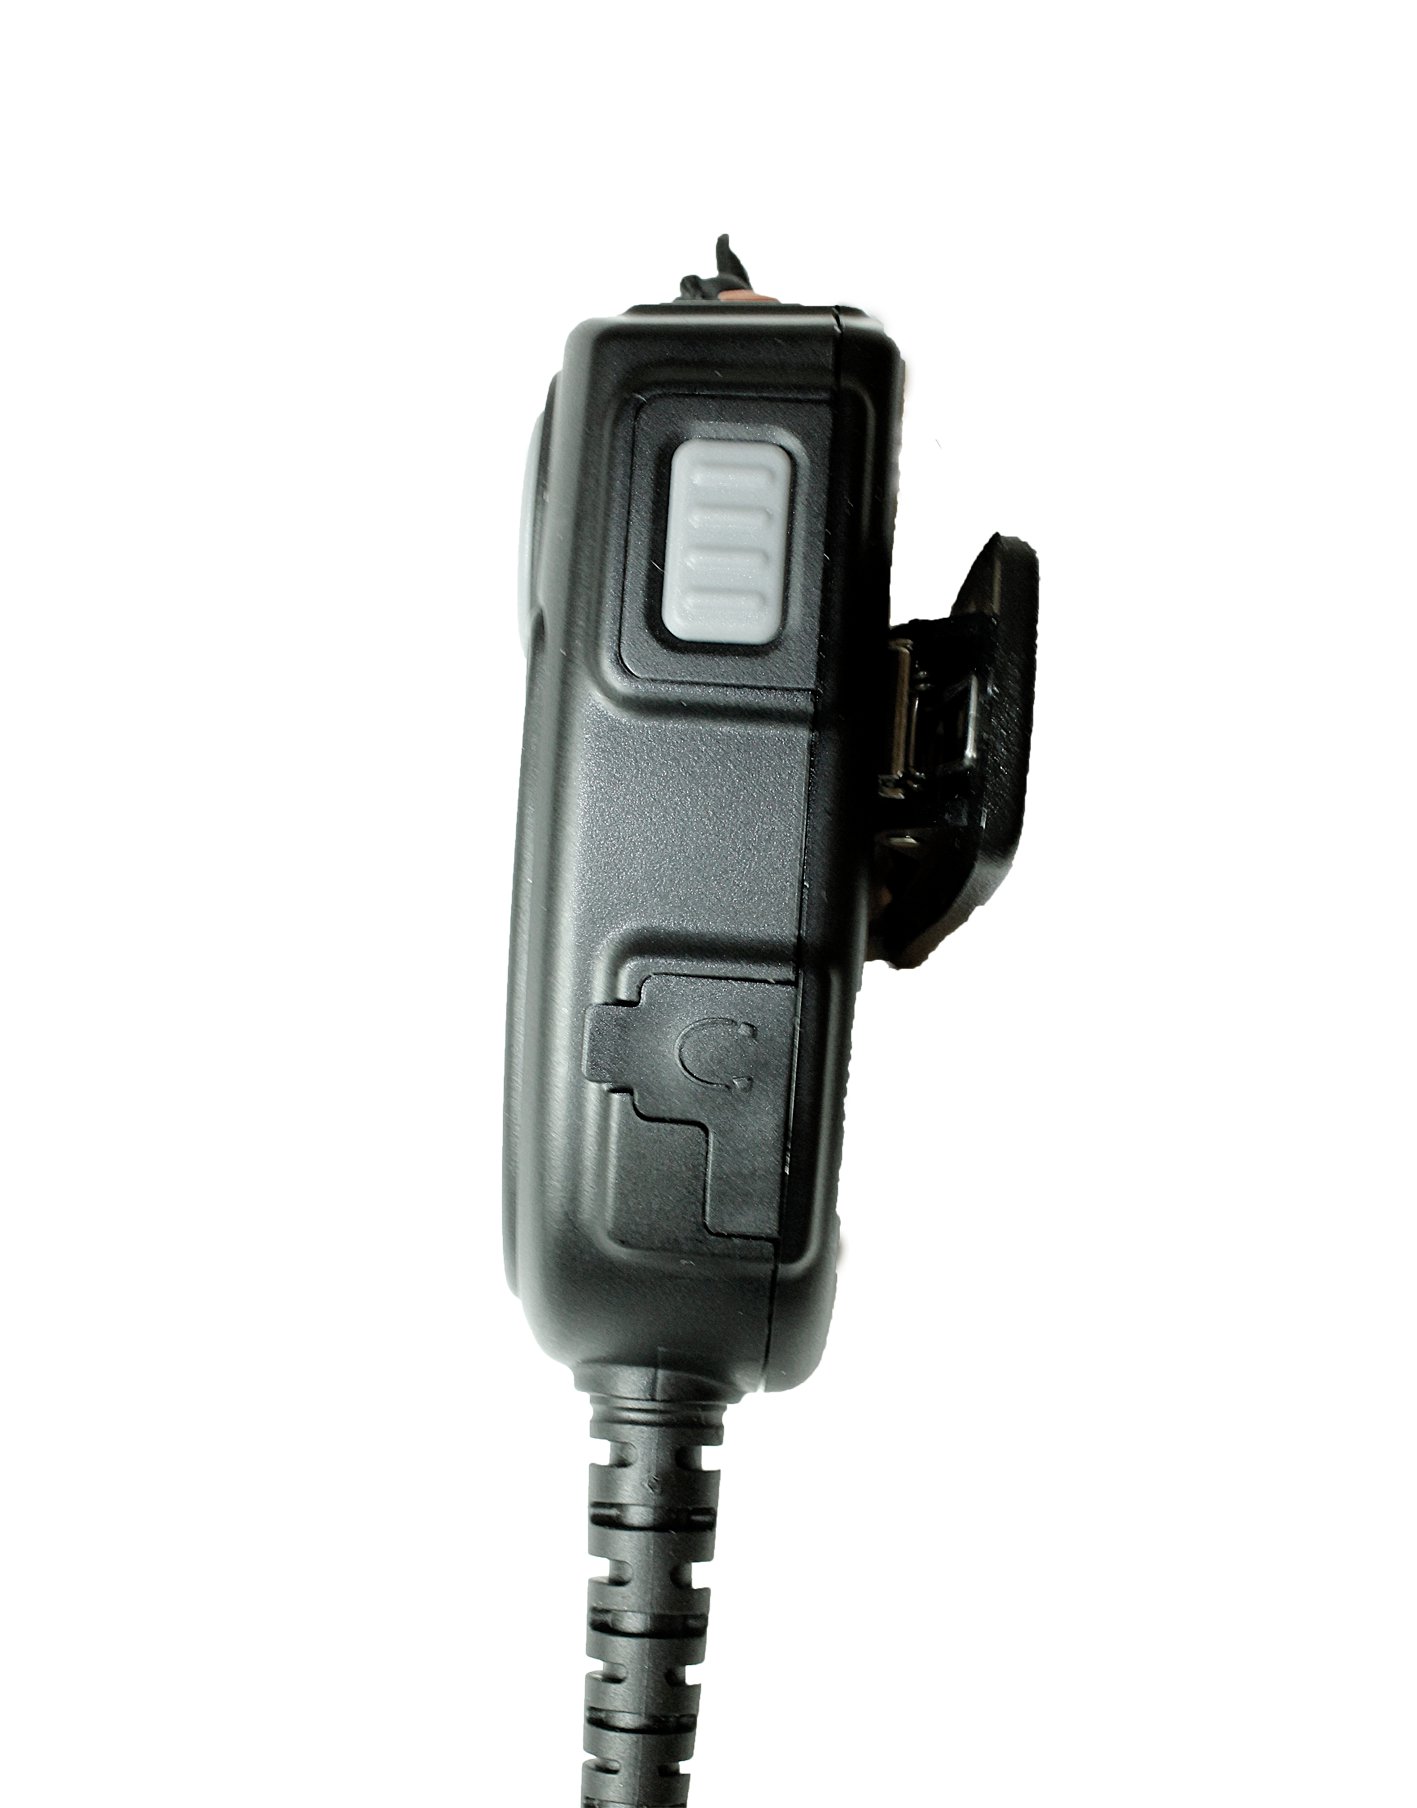 TITAN Lautsprechermikrofon MMW20 mit Nexus 02 und PTT-Modul passend für Motorola MTP850FuG